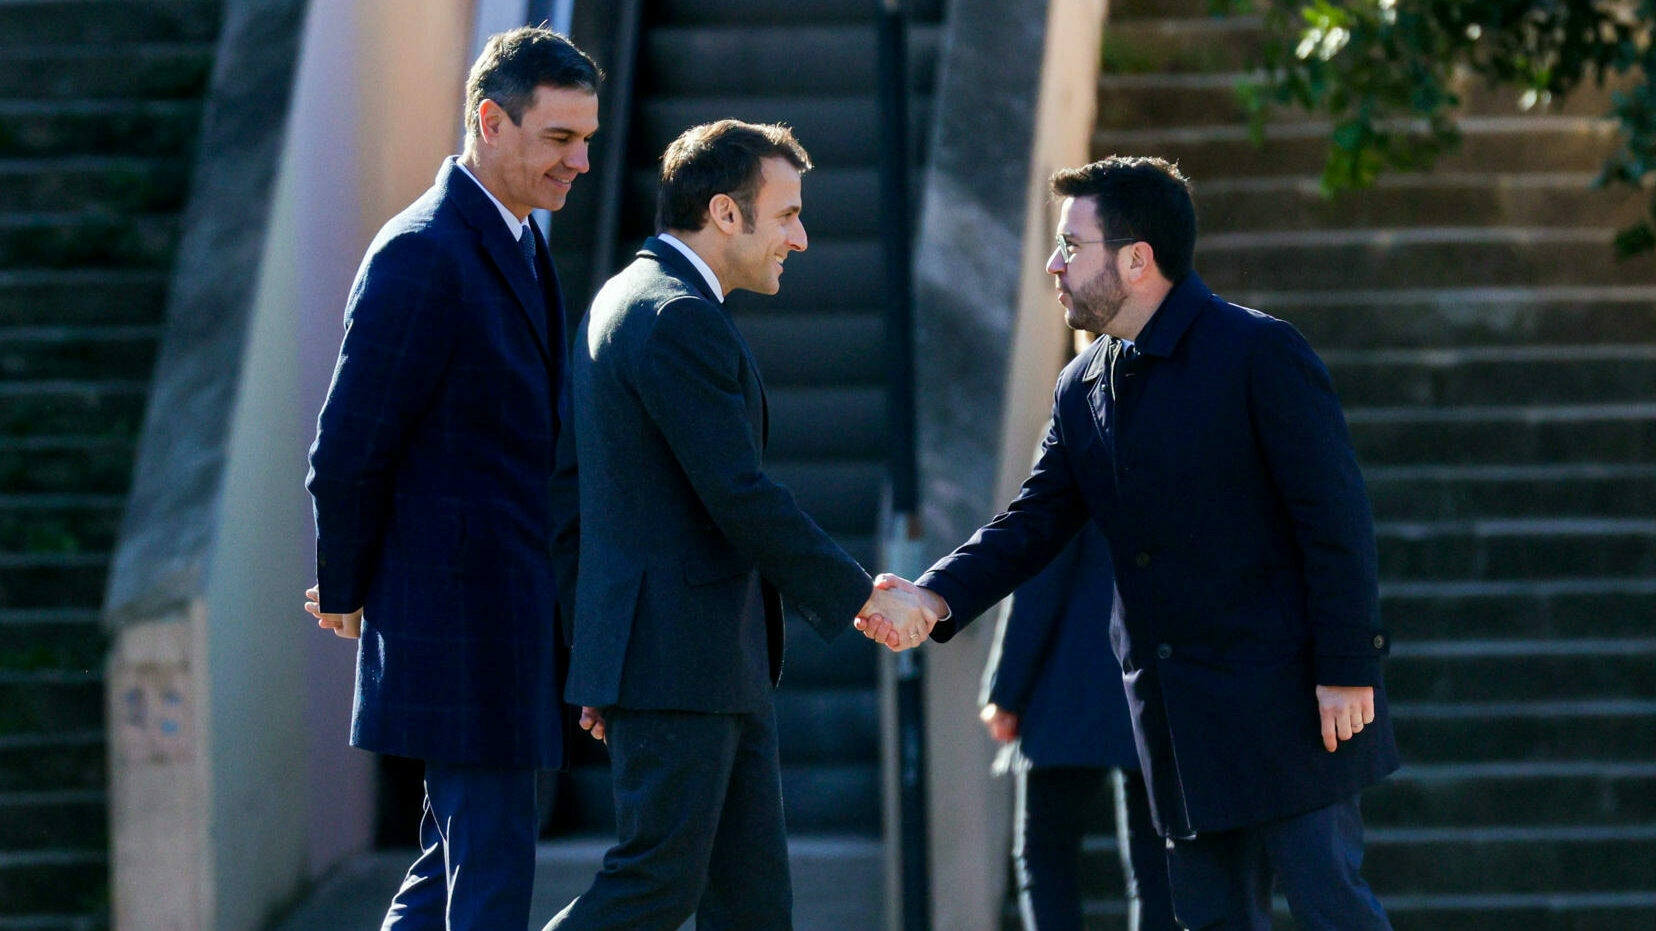 Aragonès recibió a Sánchez y Macron en la cumbre hispano-francesa de Barcelona